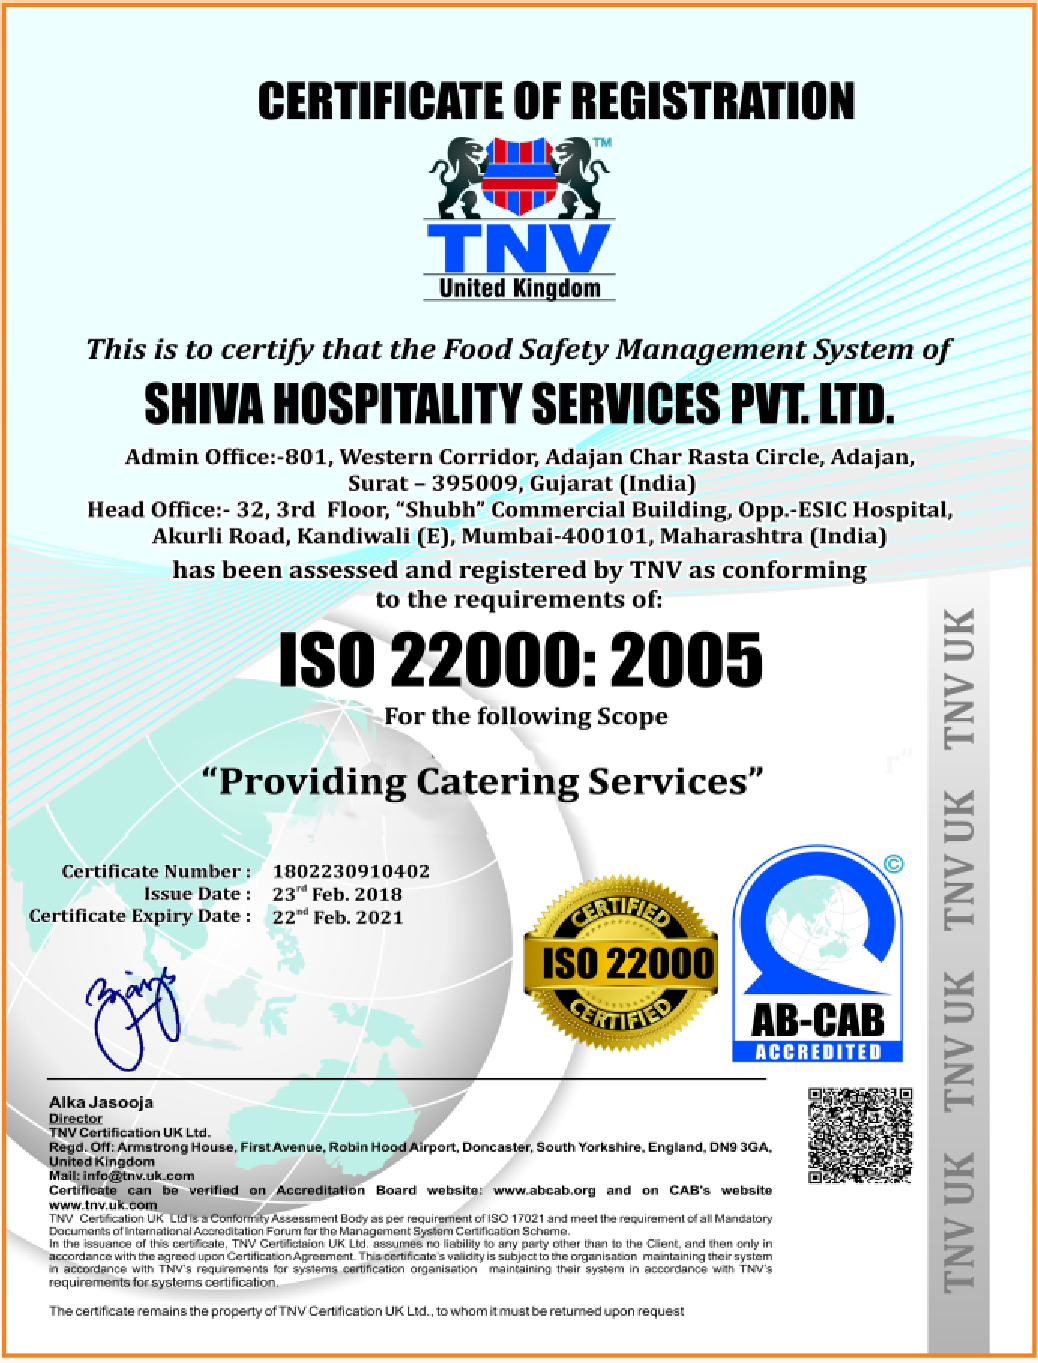  Shiva Hospitality Services - ISO 22000:2005 